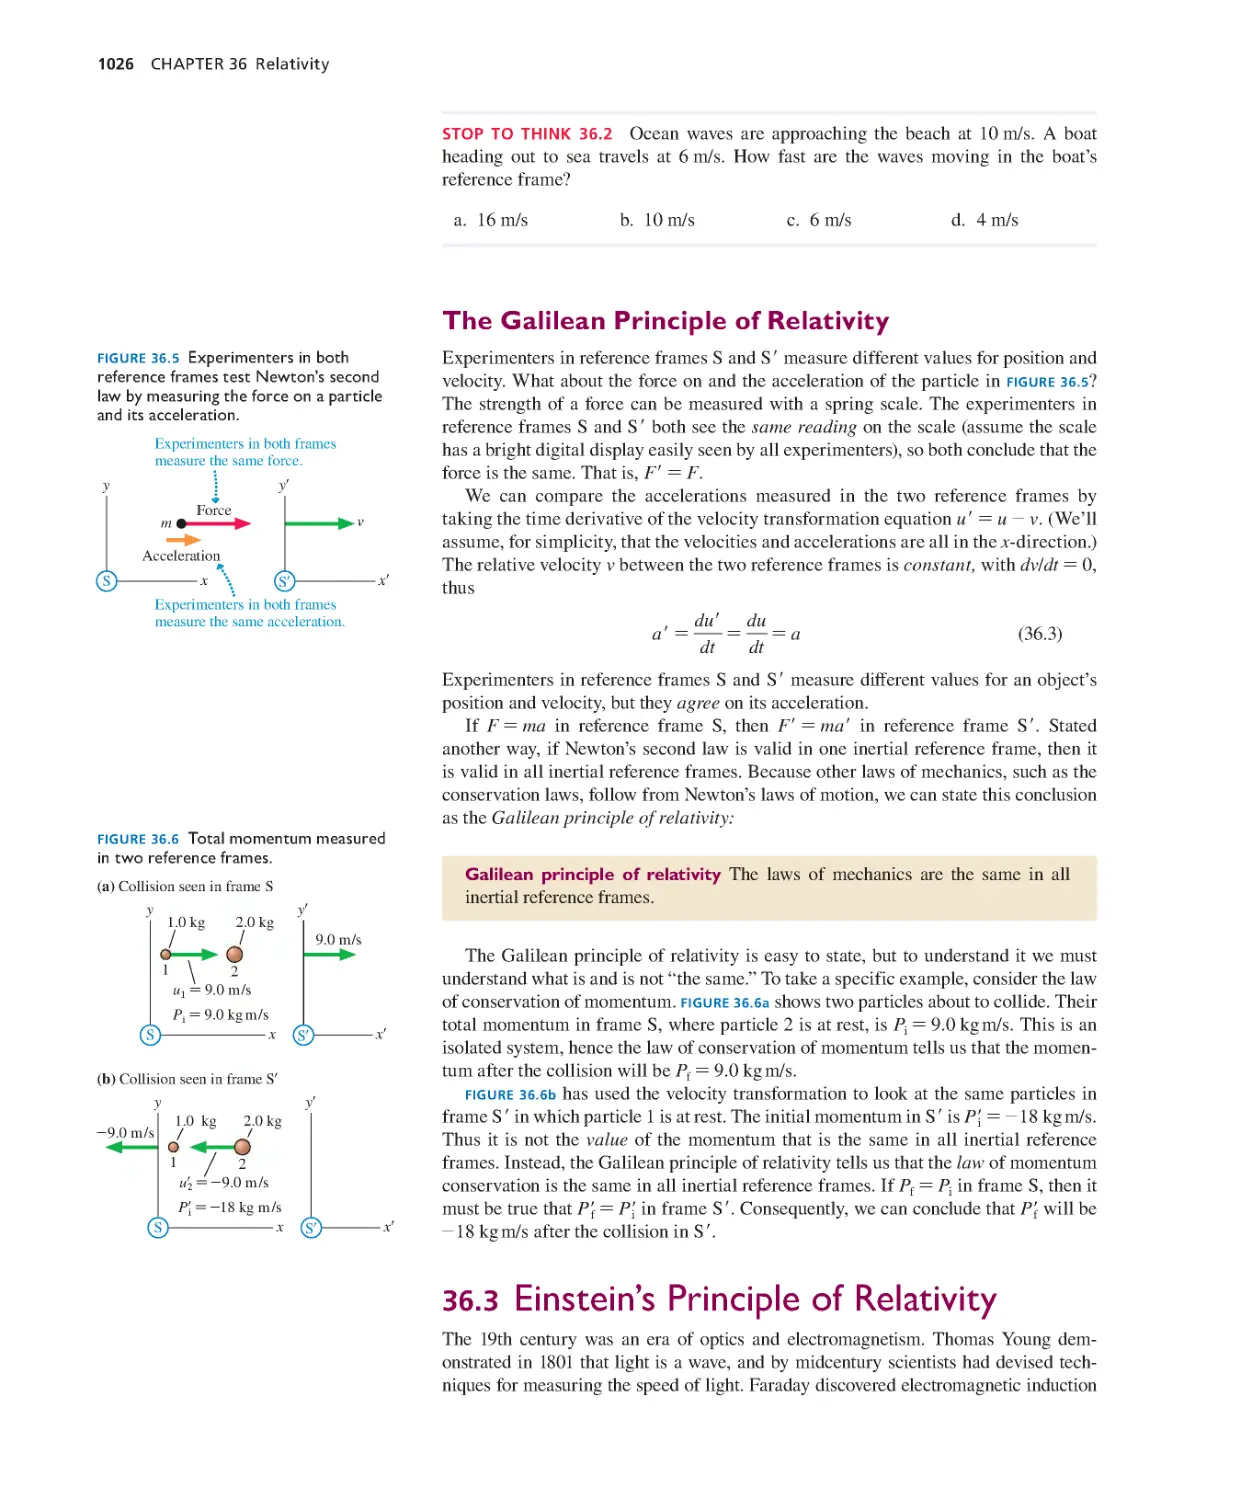 36.3. Einstein’s Principle of Relativity